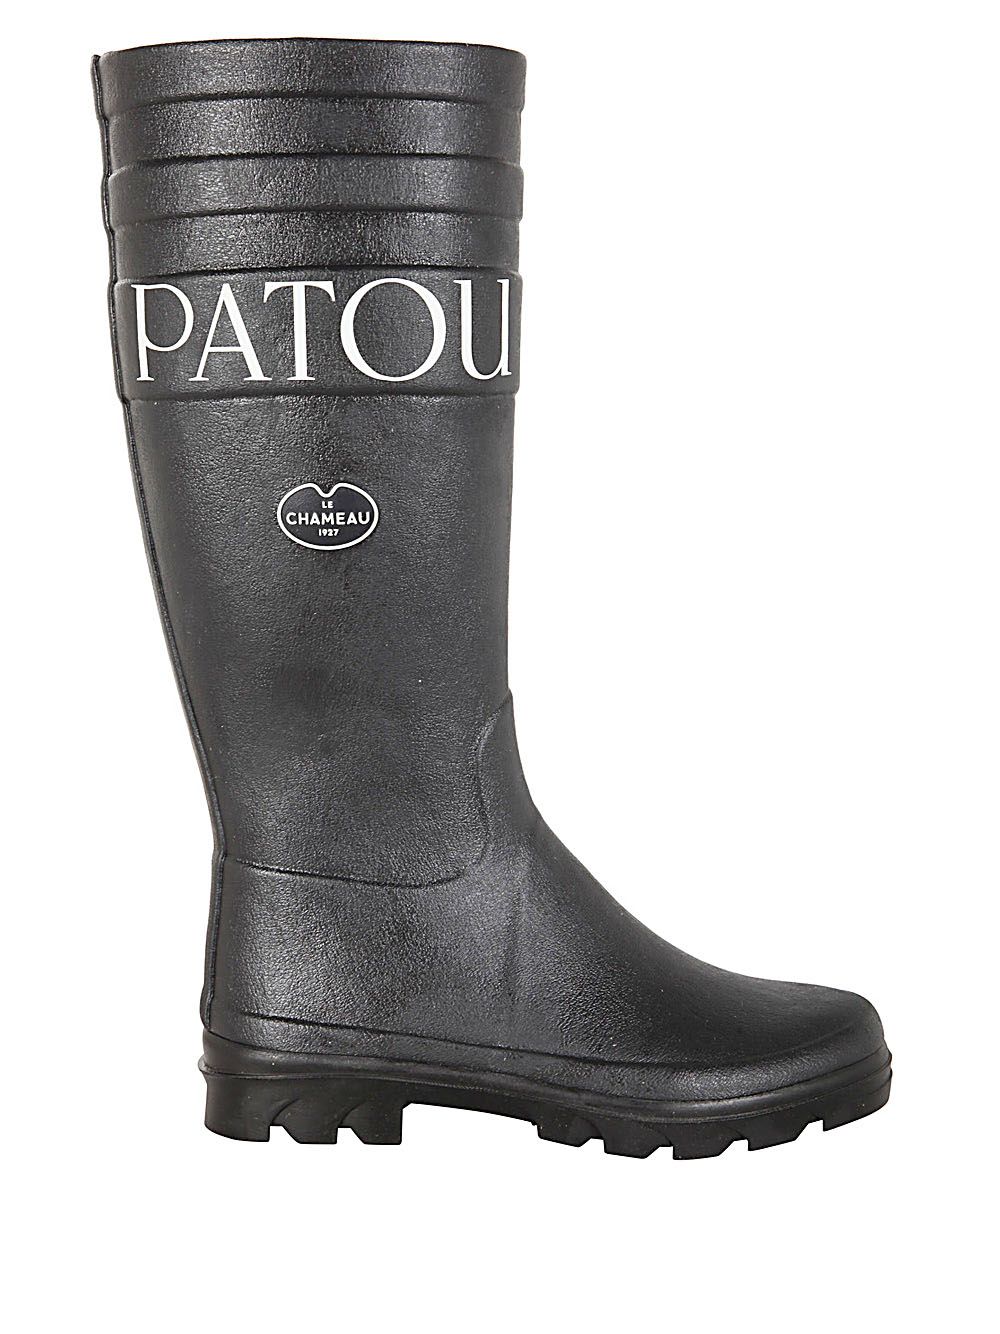 Shop Patou Hightop Boots Le Chameau